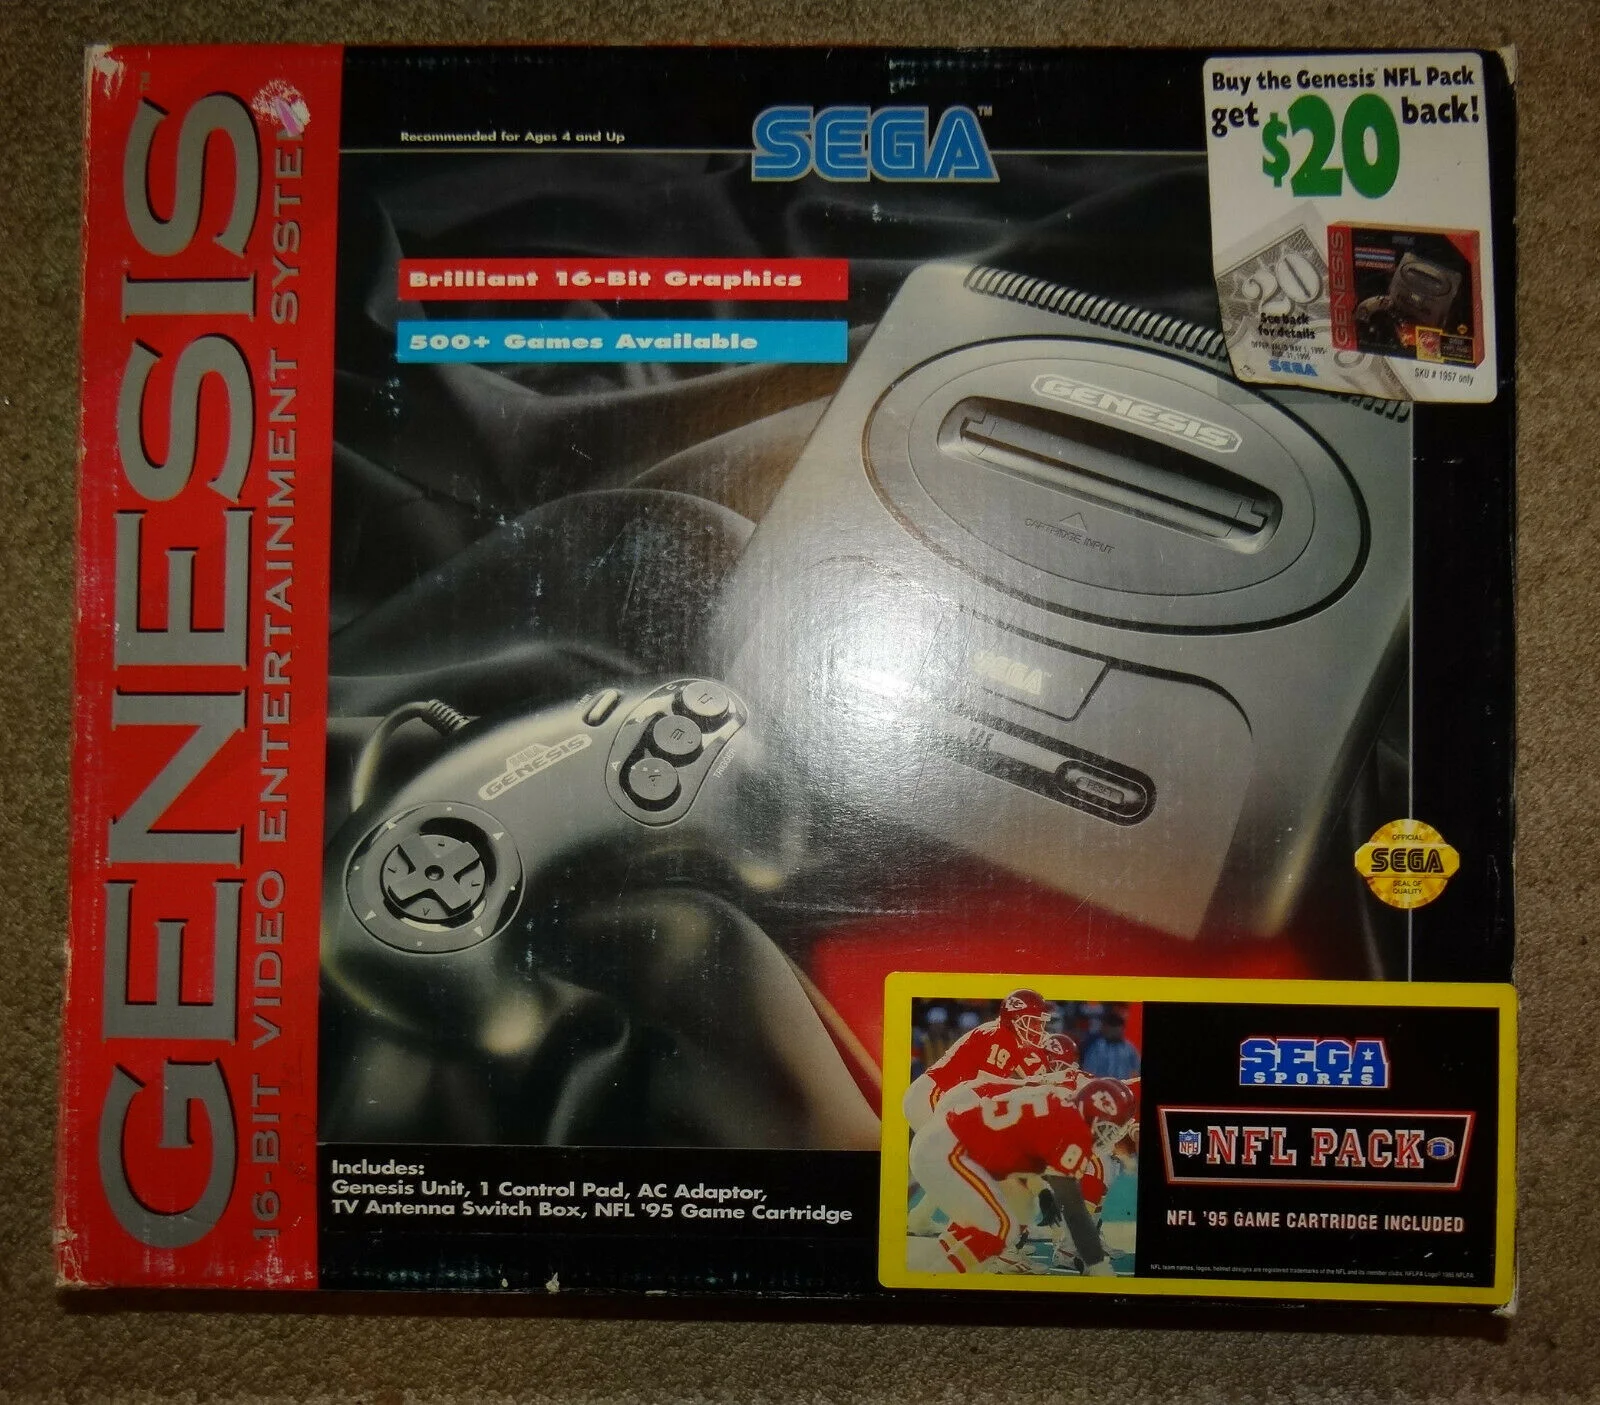  Sega Genesis Model 2 Sega Sports NFL Pack